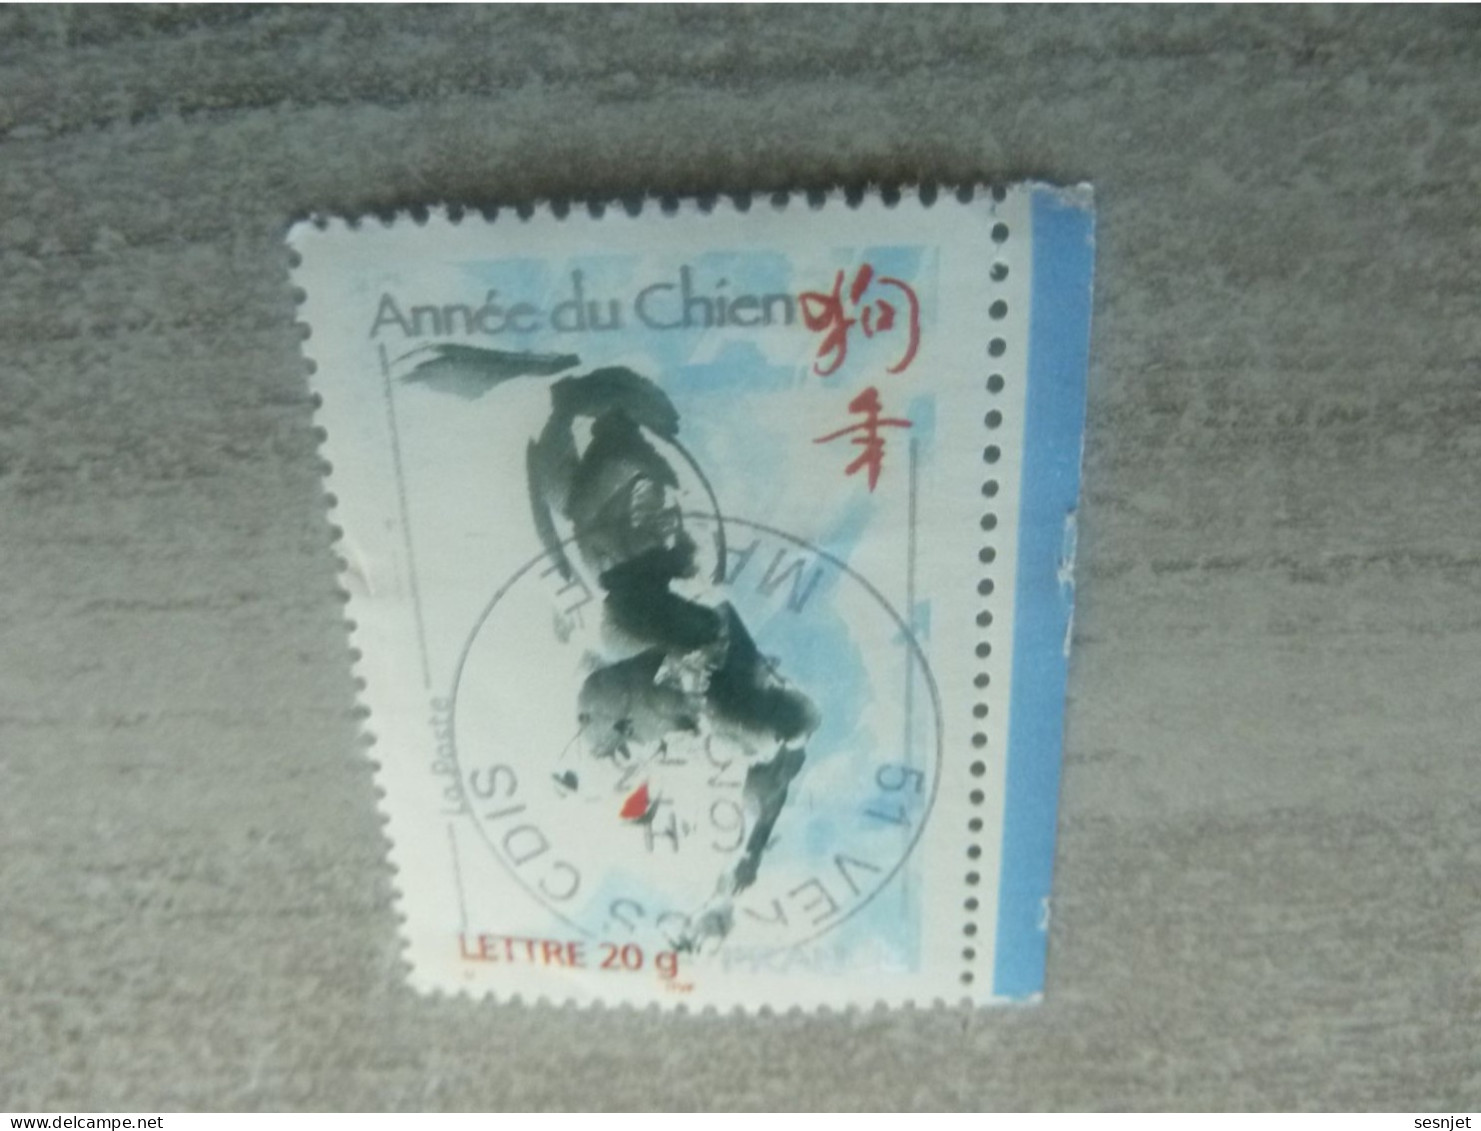 Année Lunaire Chinoise Du Chien - Tvp Lettre 20g. - Yt 3865 - Multicolore - Oblitéré - Année 2006 - - Used Stamps